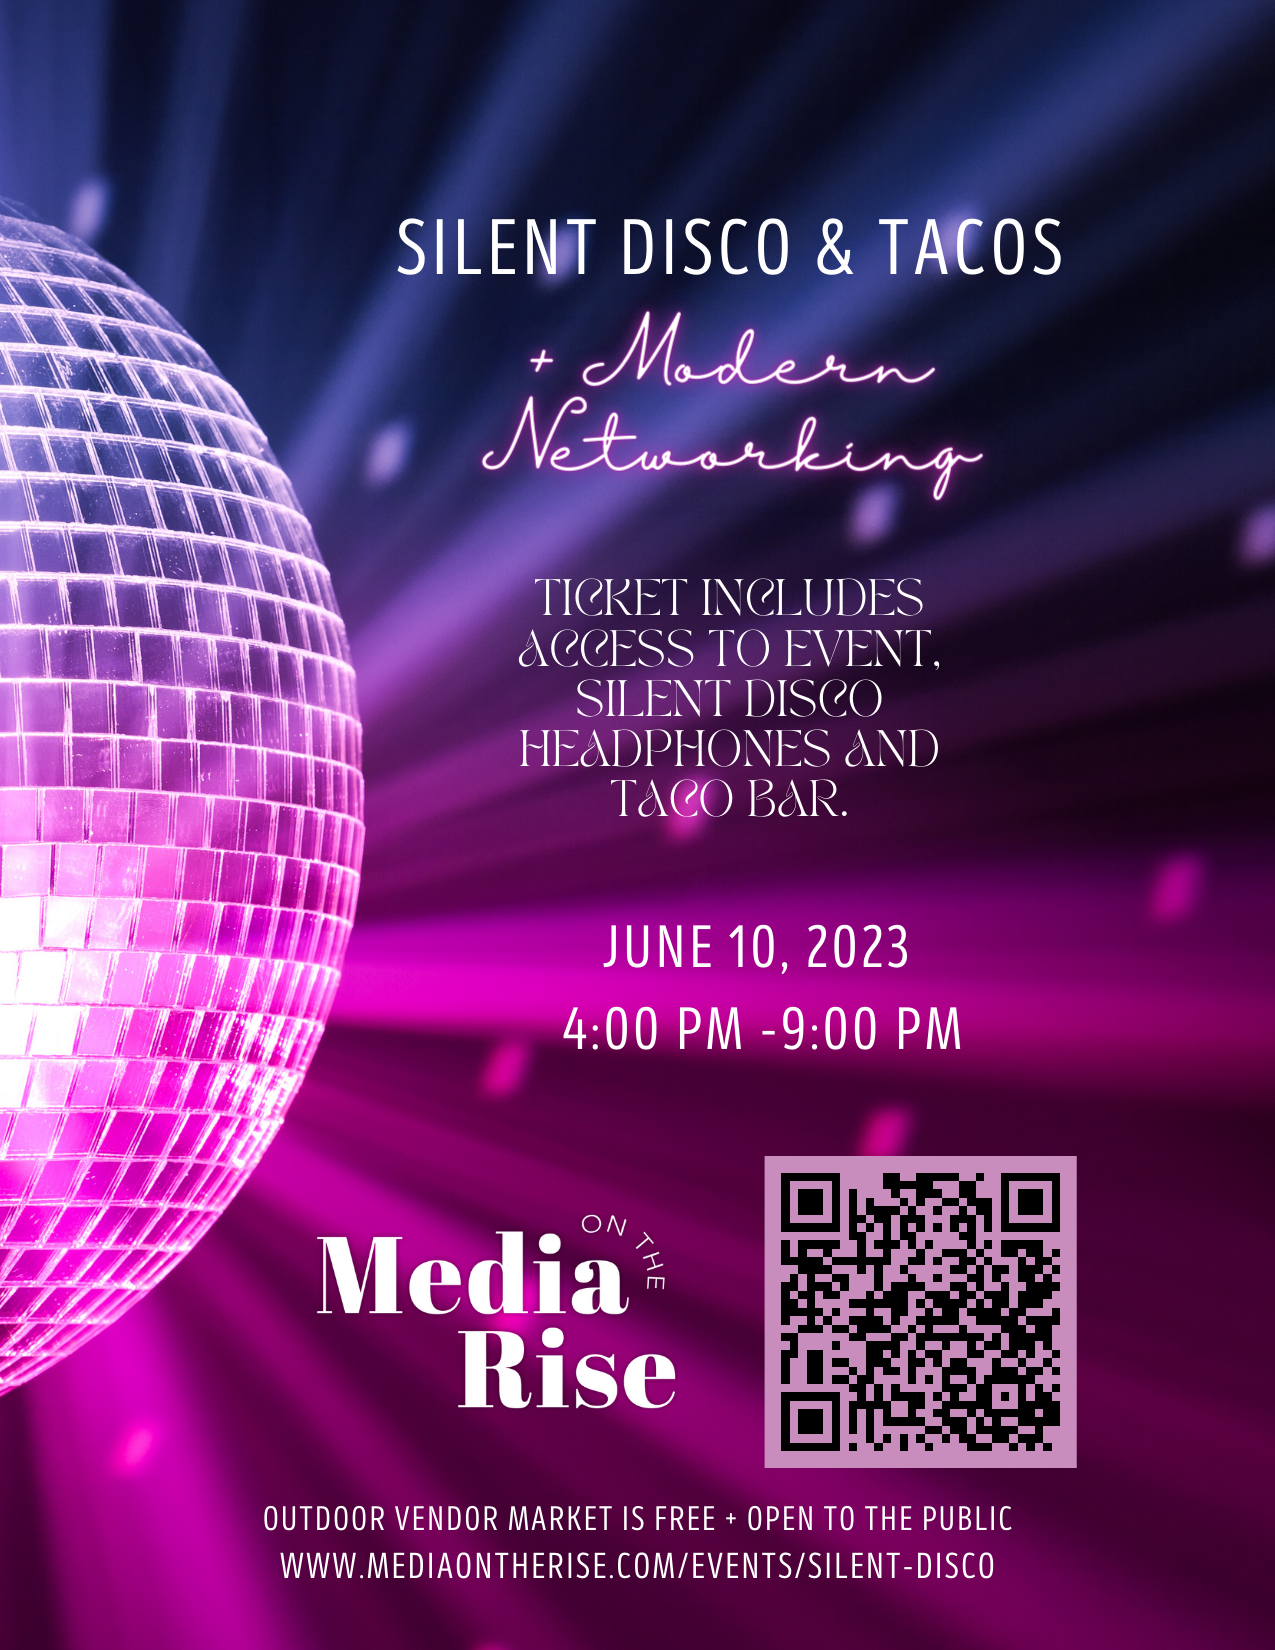 Silent Disco Event In La Jolla